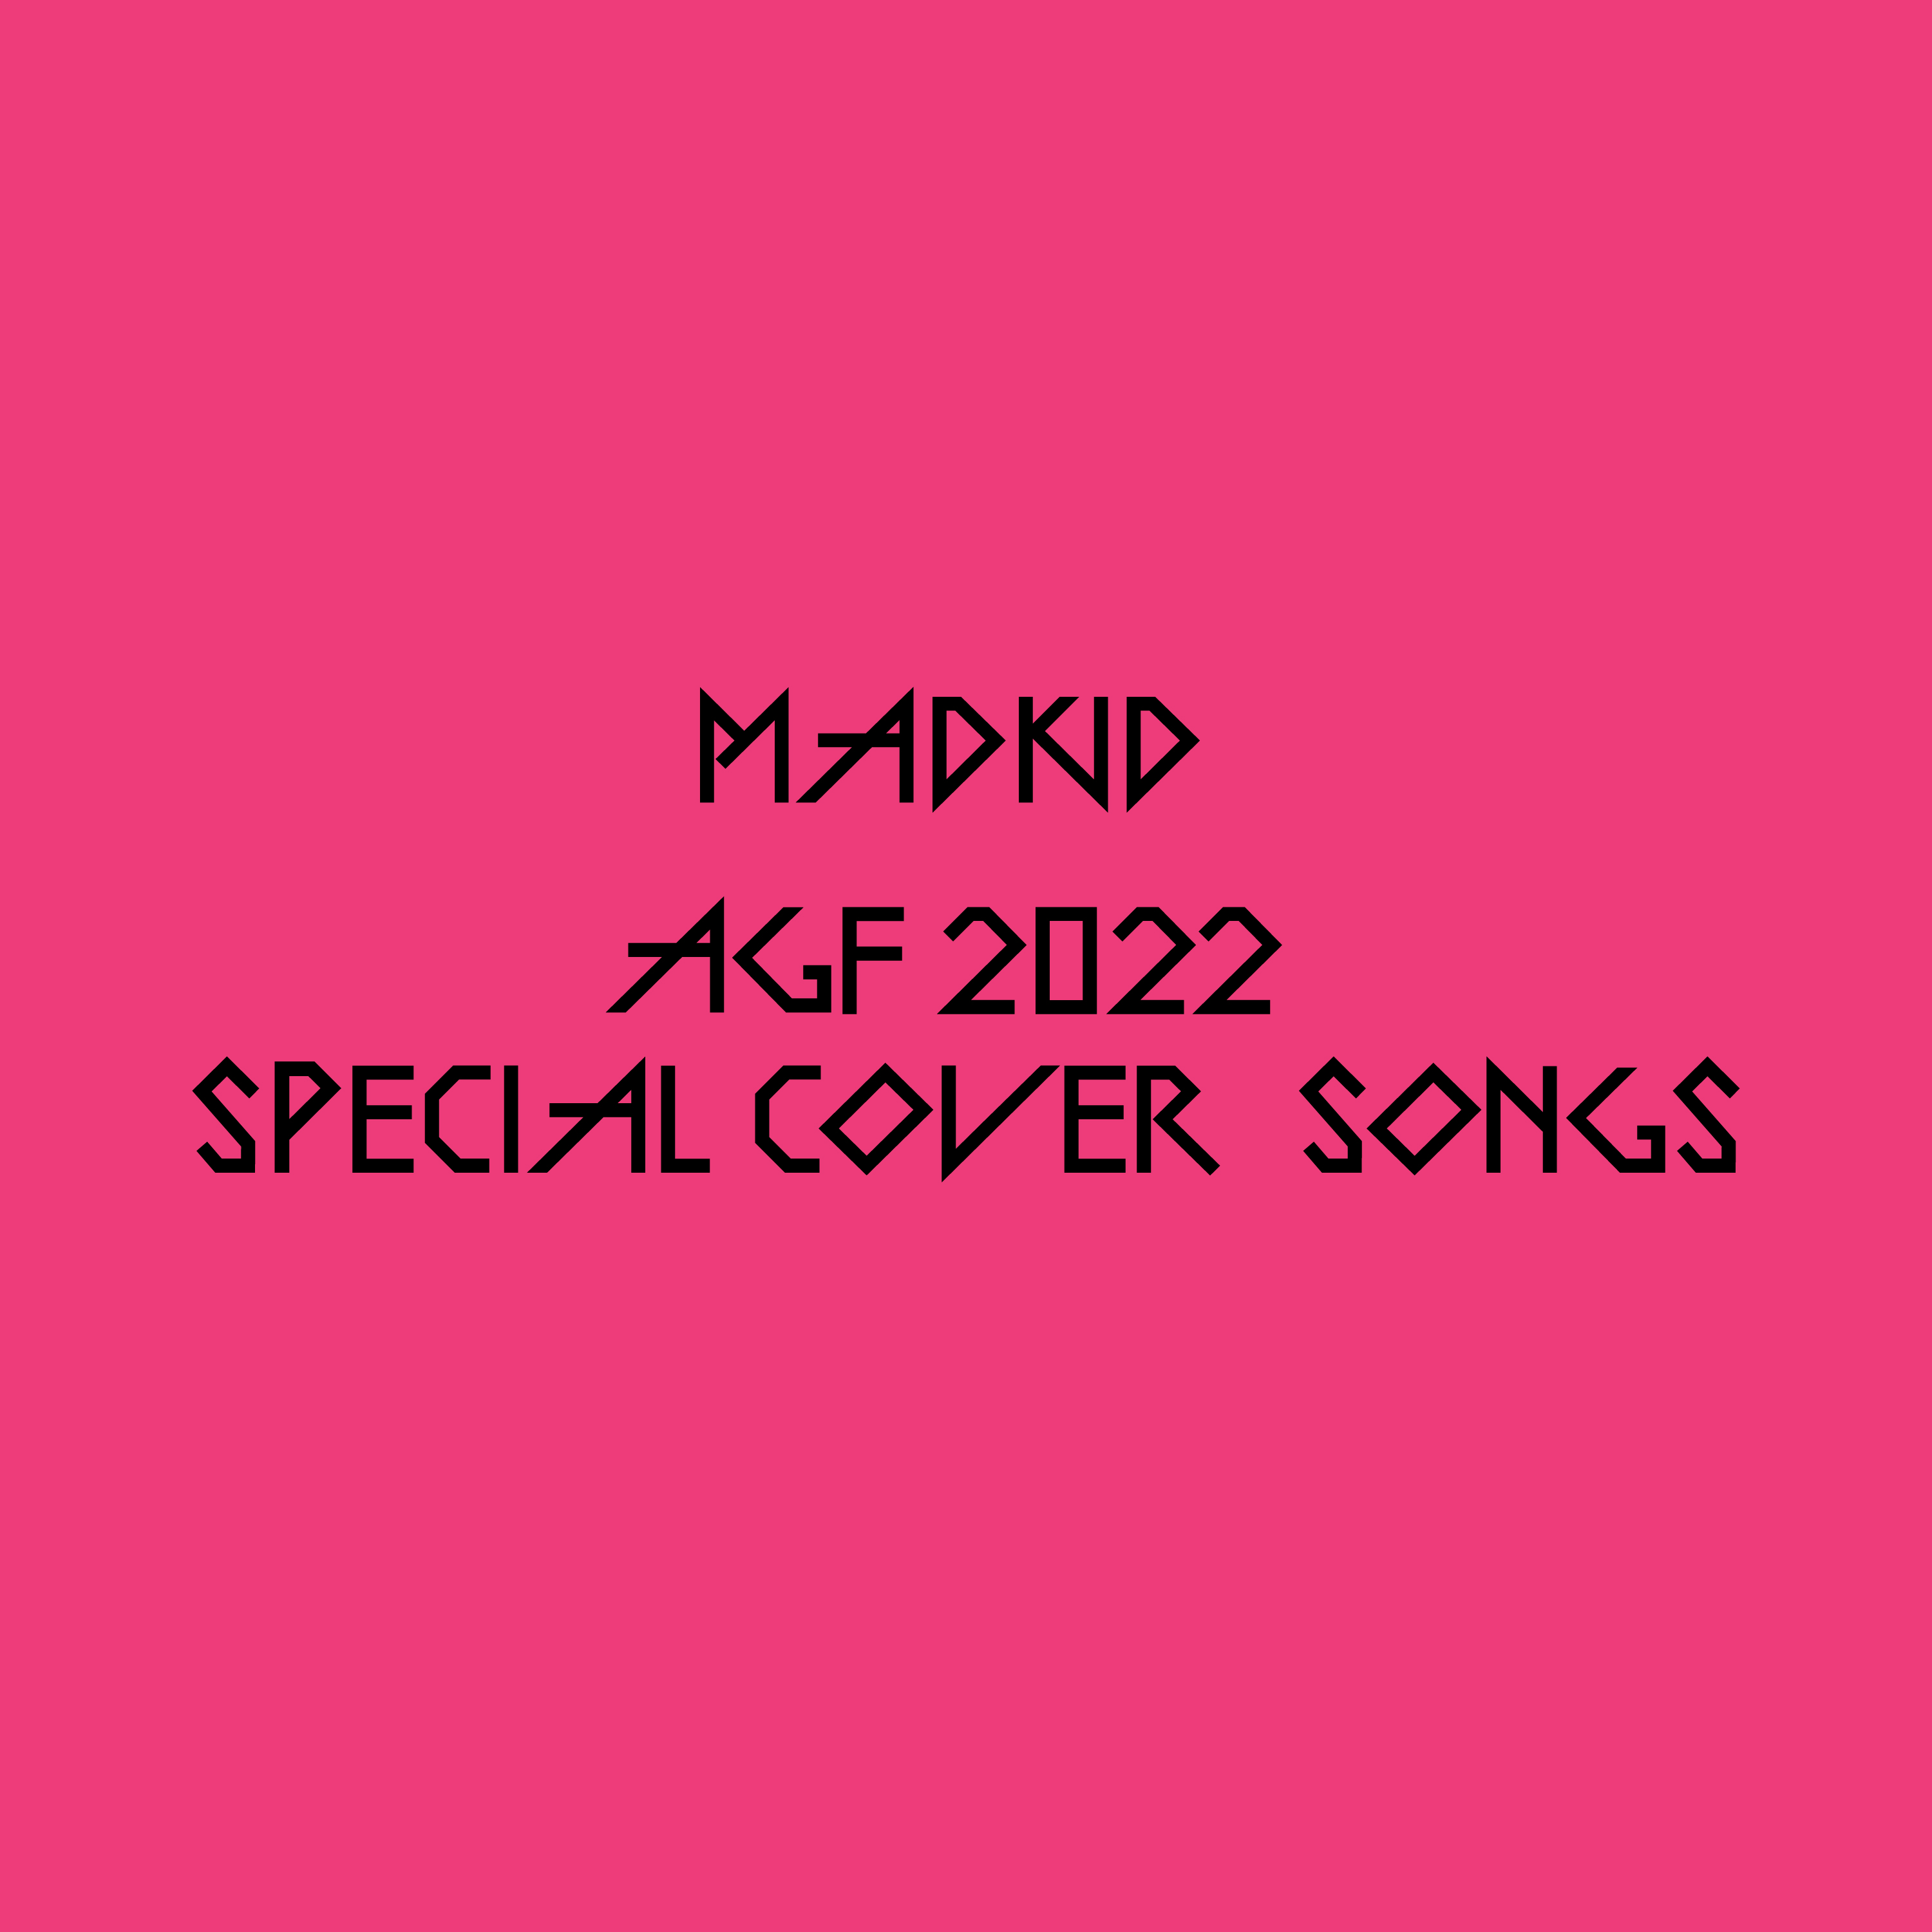 【アフターAGF2022】MADKID AGF2022 SPECIAL COVER SONGS